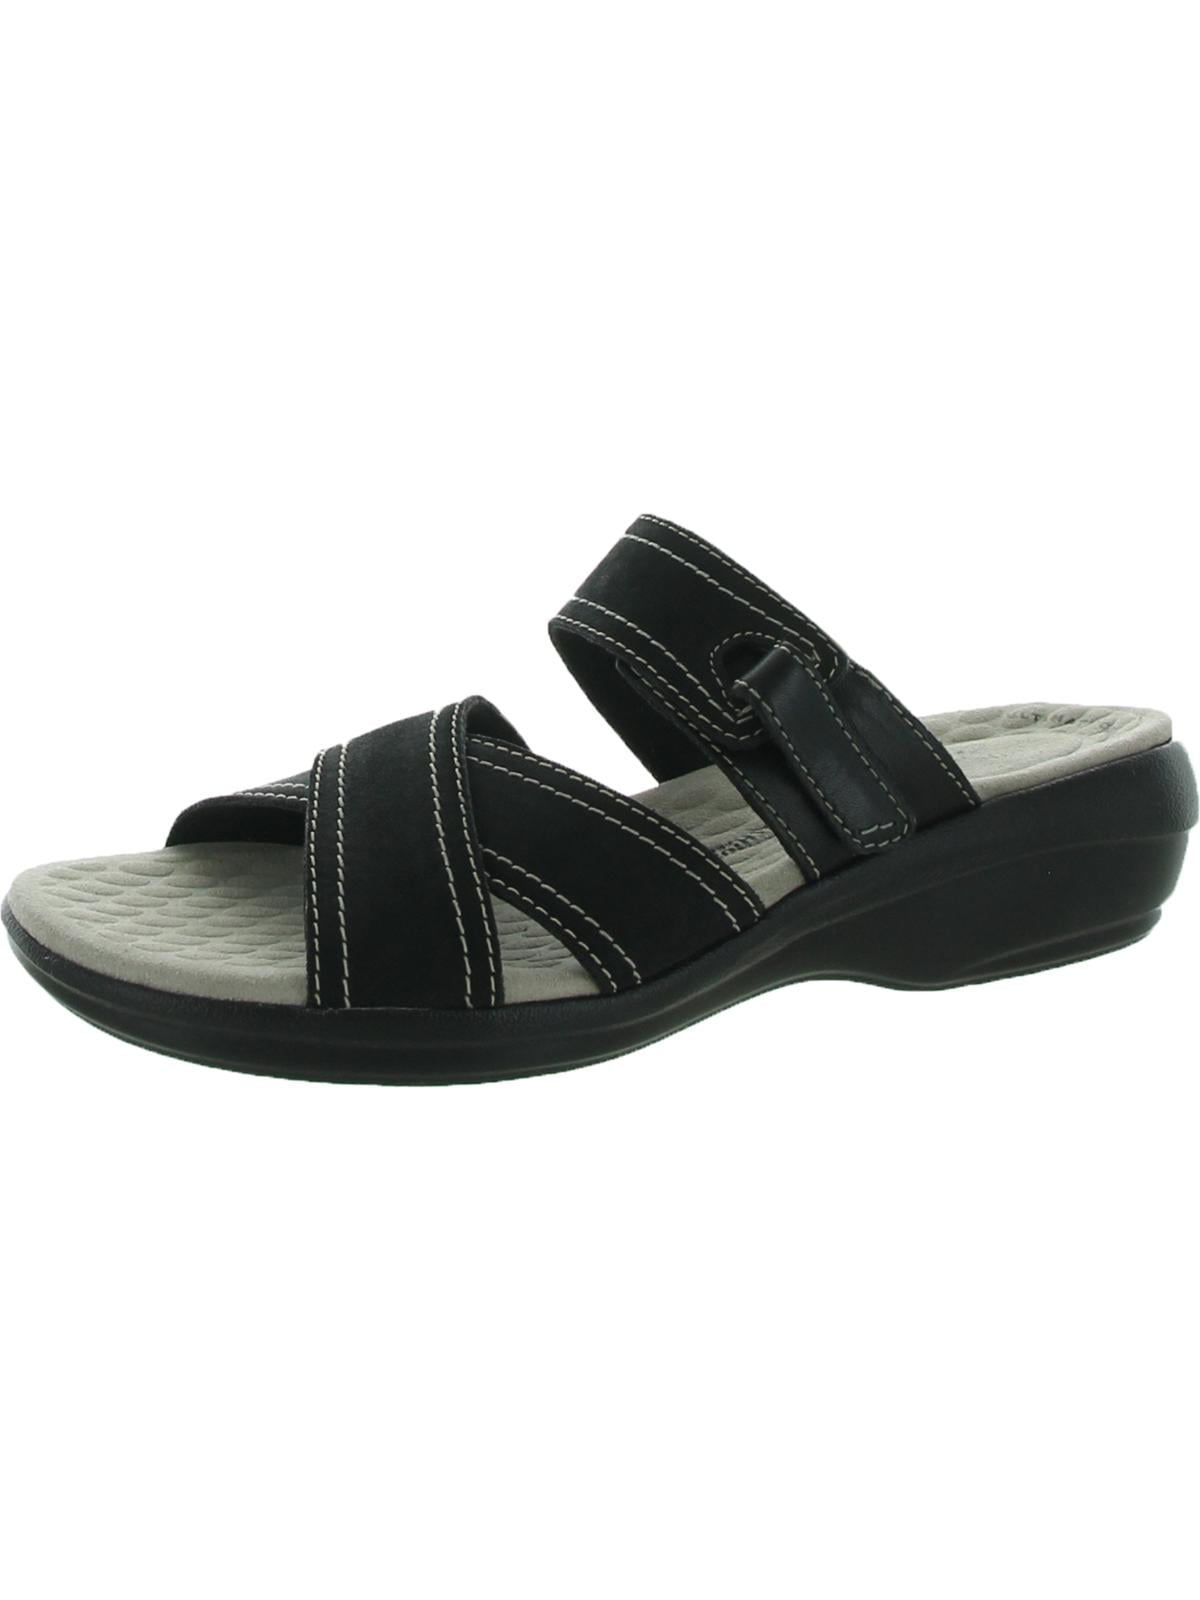 Clarks Womens Alexis Art Leather Slip On Slide Sandals Black 8.5 Narrow ...